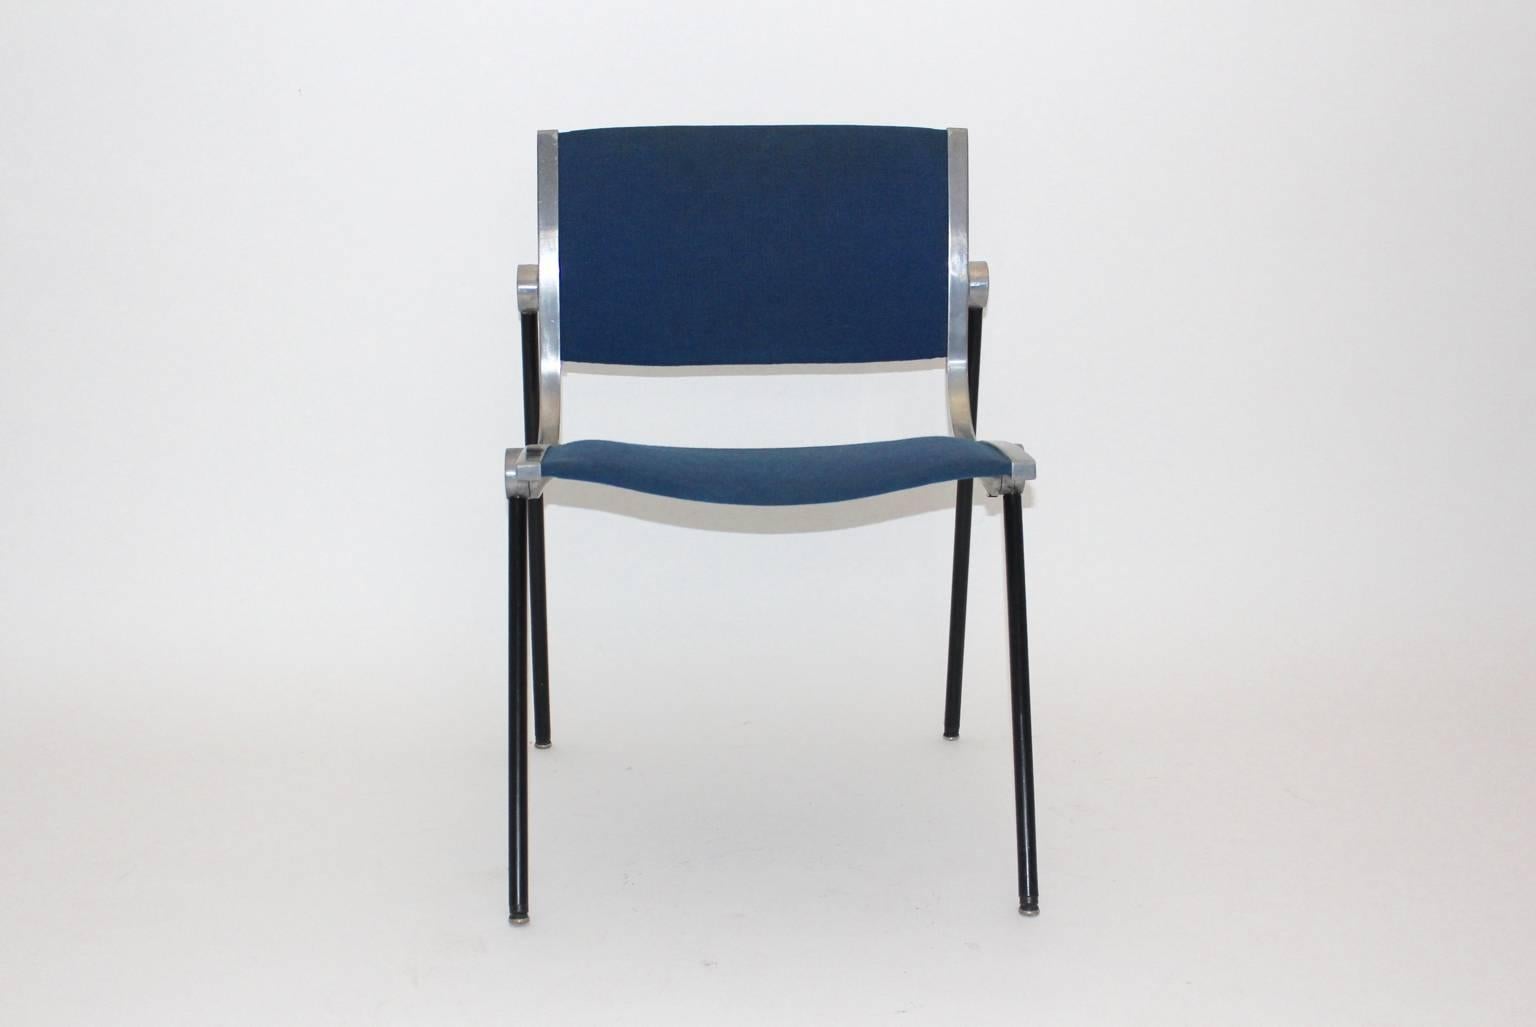 Mid Century Modern Vintage Stuhl oder Beistellstuhl oder Bürostuhl aus Aluminium von Vaghi um 1960 Italien.
Der Stuhl besteht aus einem Aluminiumrahmen, während die Beine kunststoffbeschichtet sind. Die Sitzfläche und die Rückenlehne sind mit dem